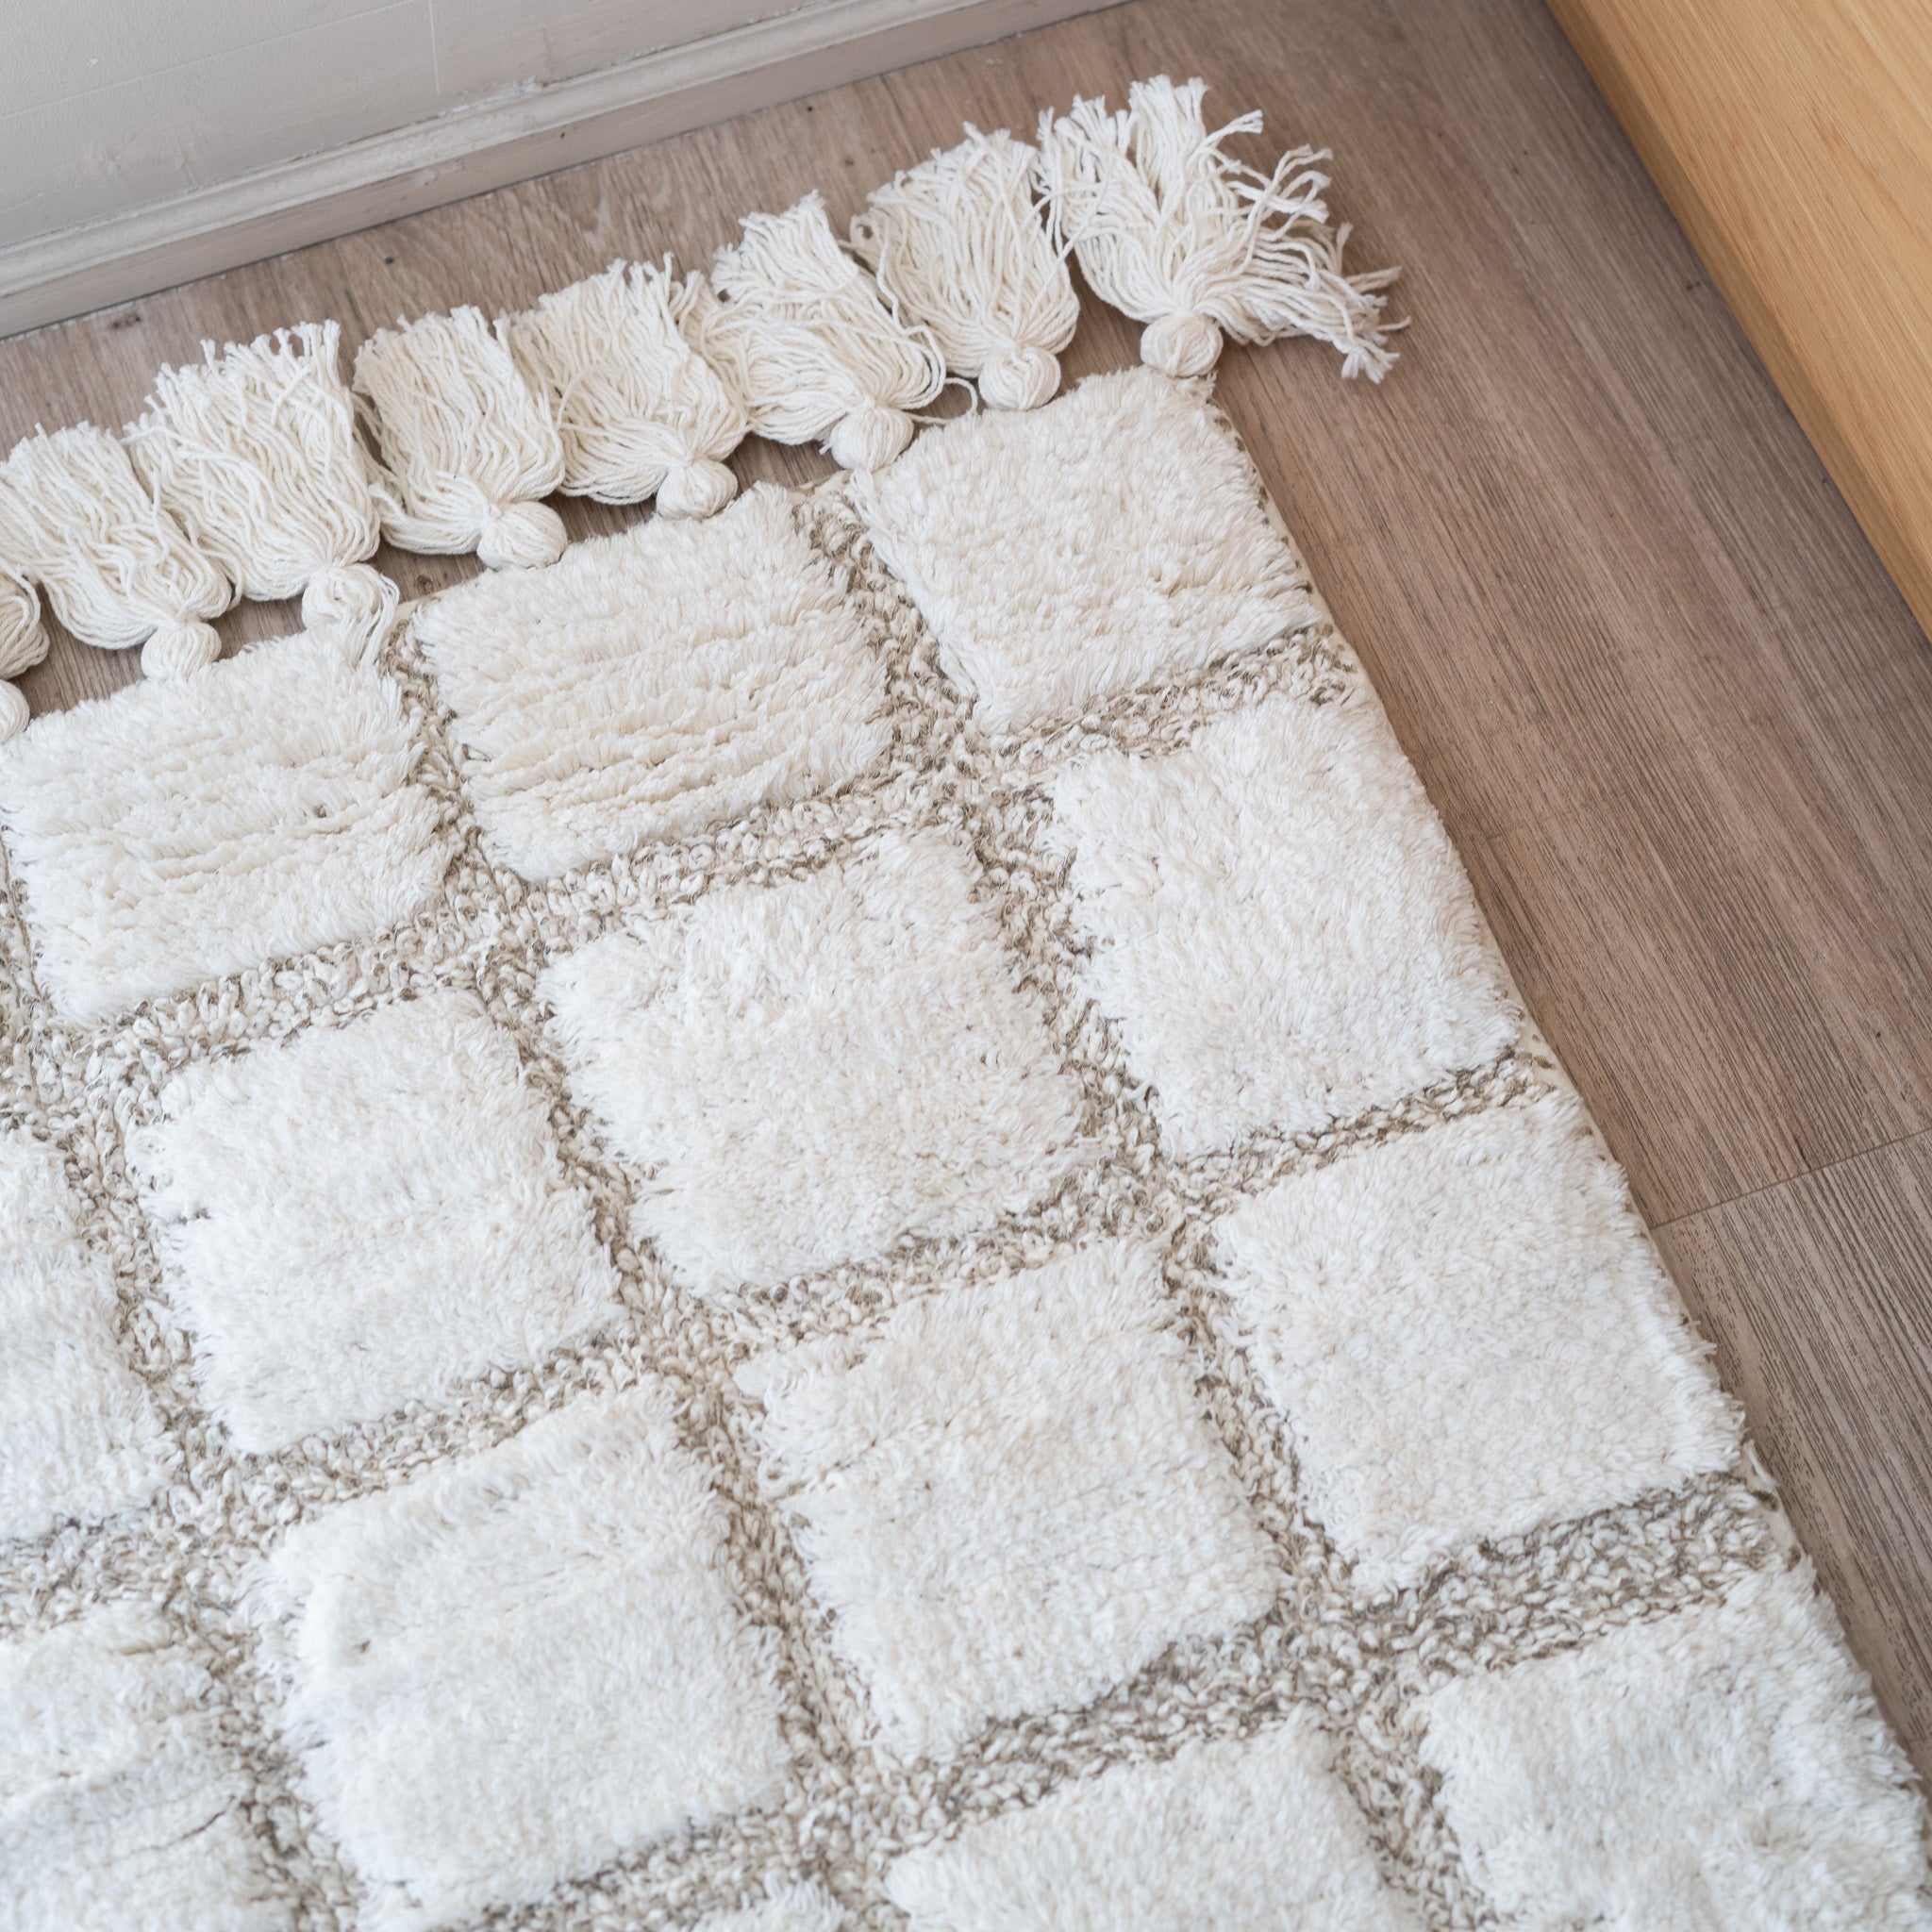 Checkered Tufted Bath mat